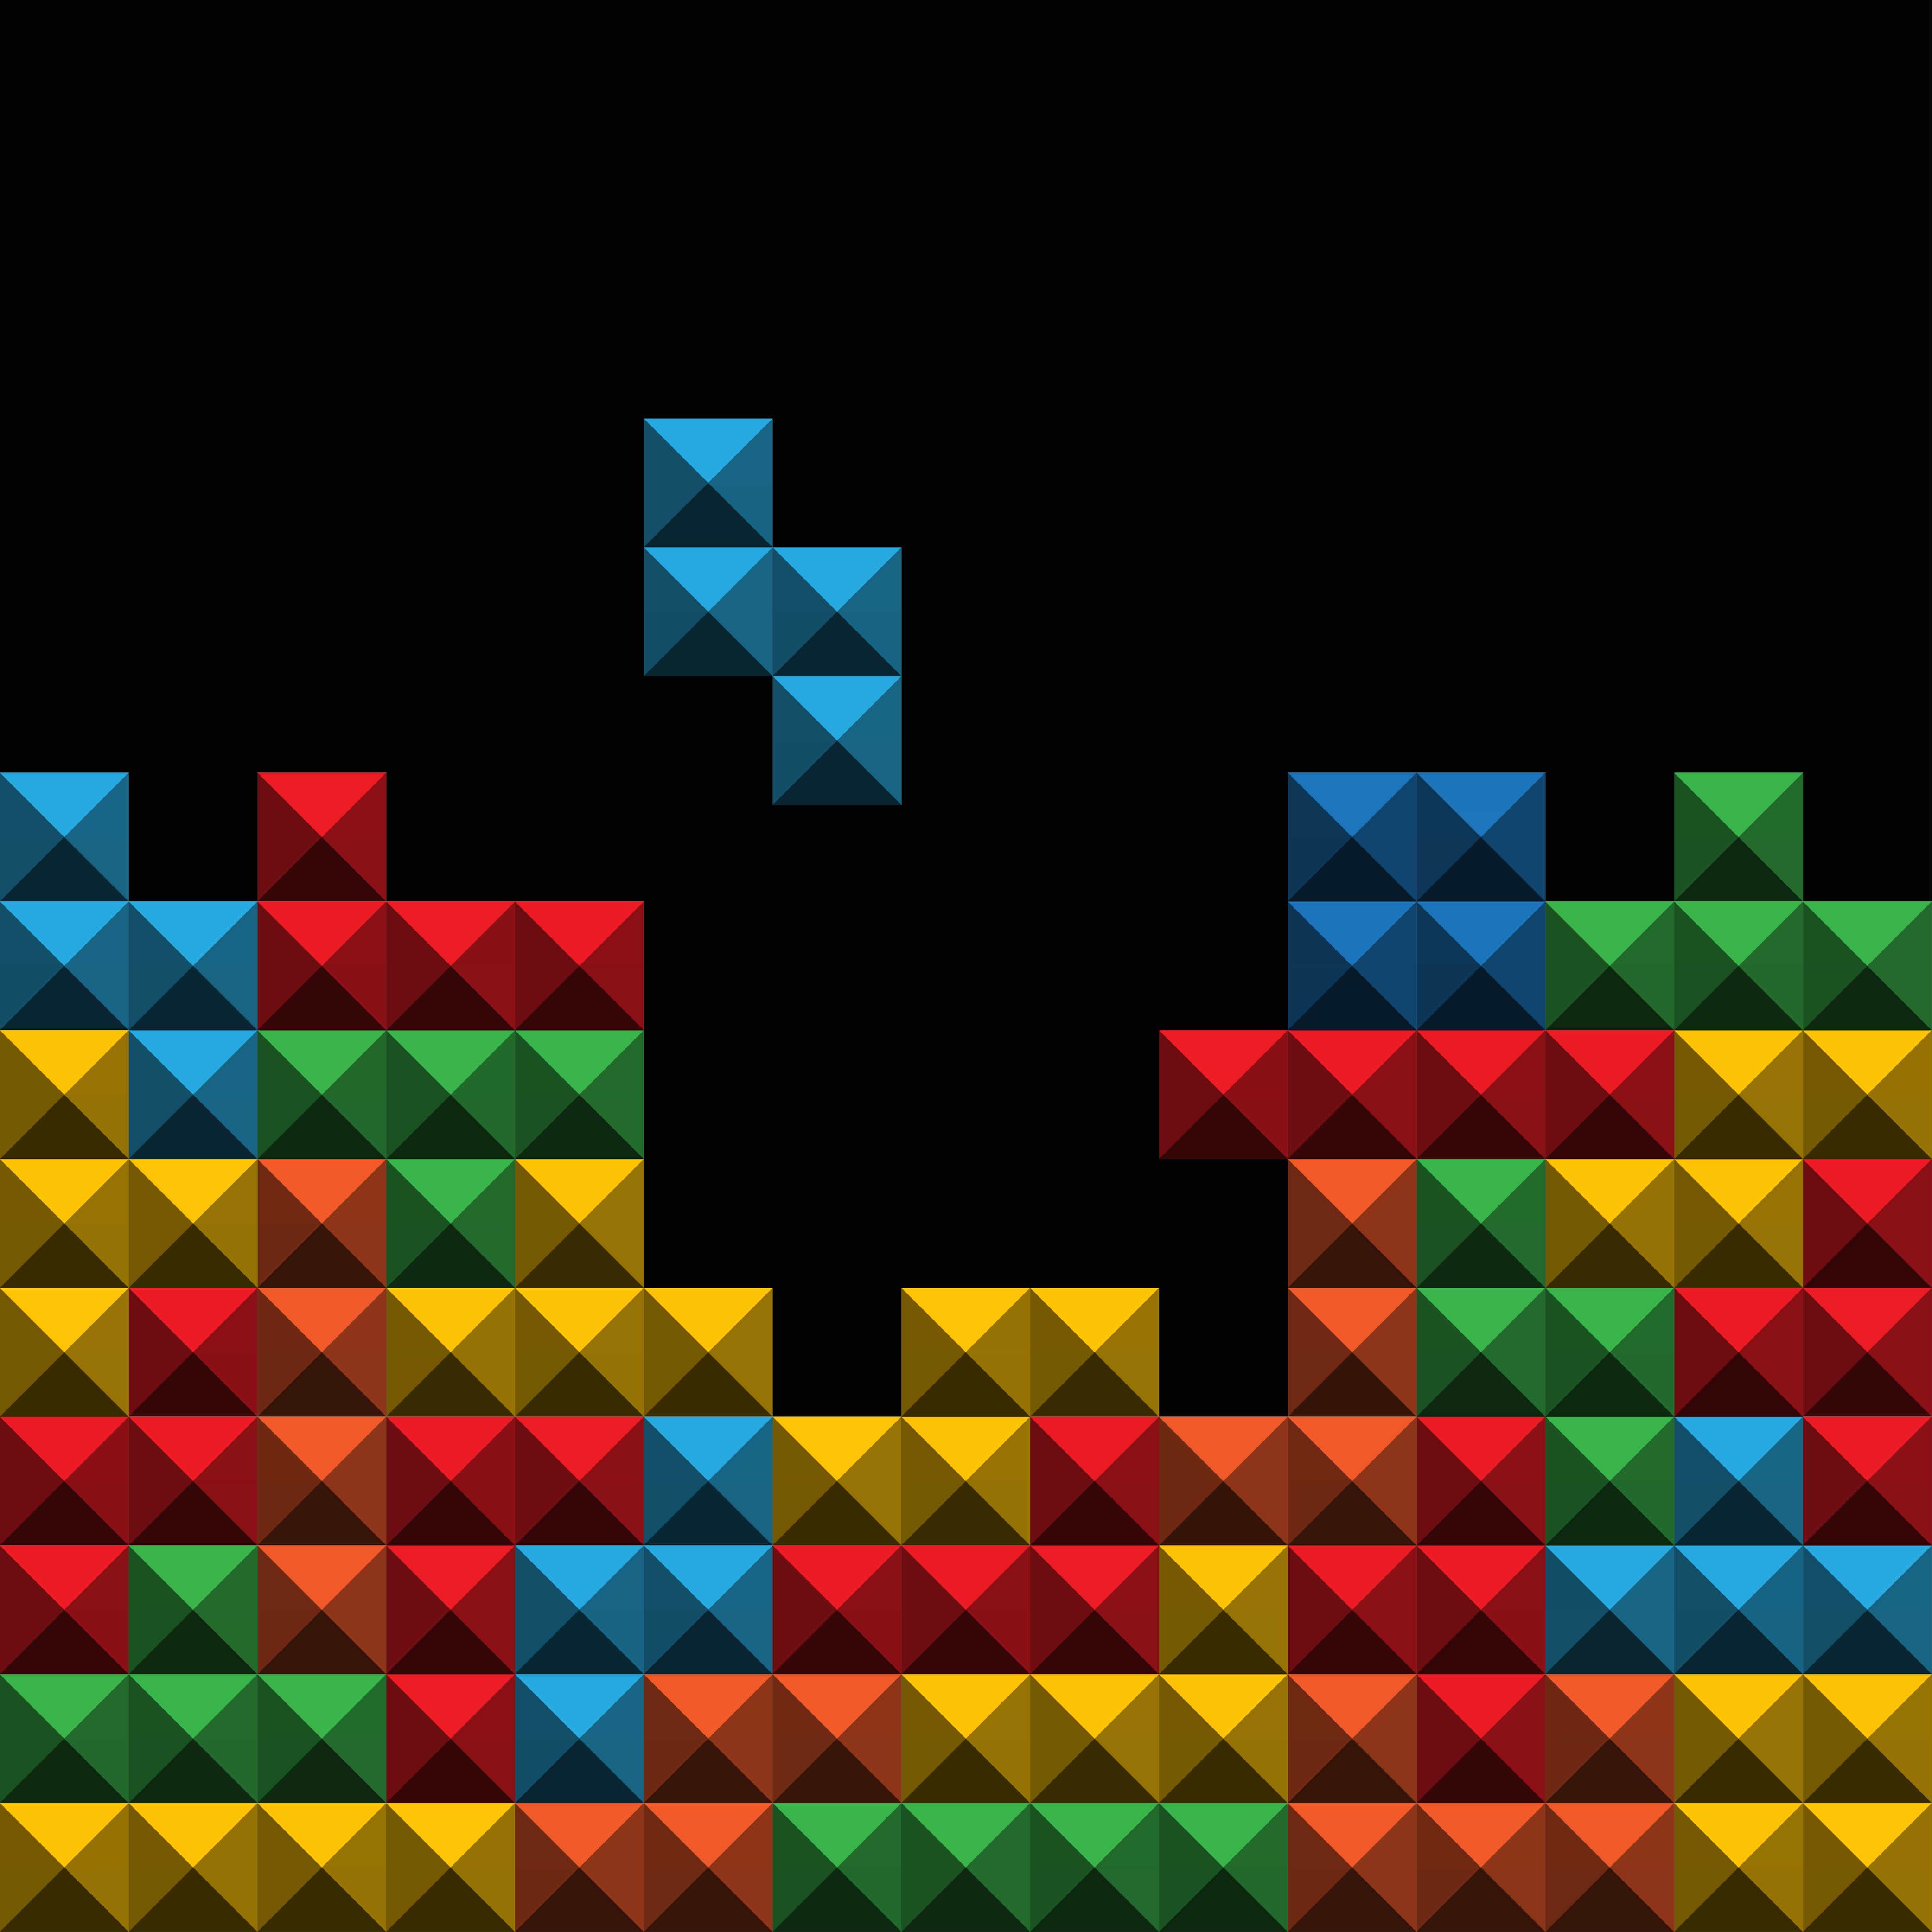 Three (or Four) Ways Sales Is Like Tetris